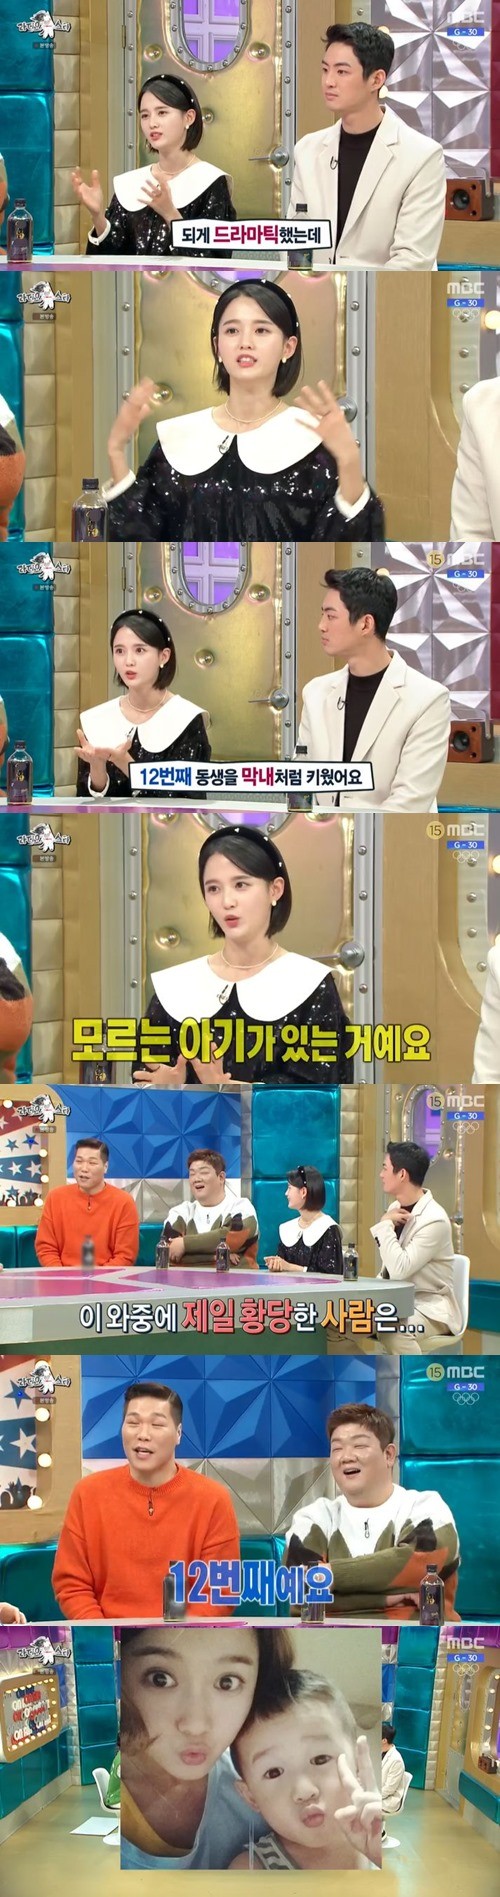 5일 MBC 예능프로그램 '라디오스타'에 출연한 배우 남보라./사진=MBC 방송 화면 캡처